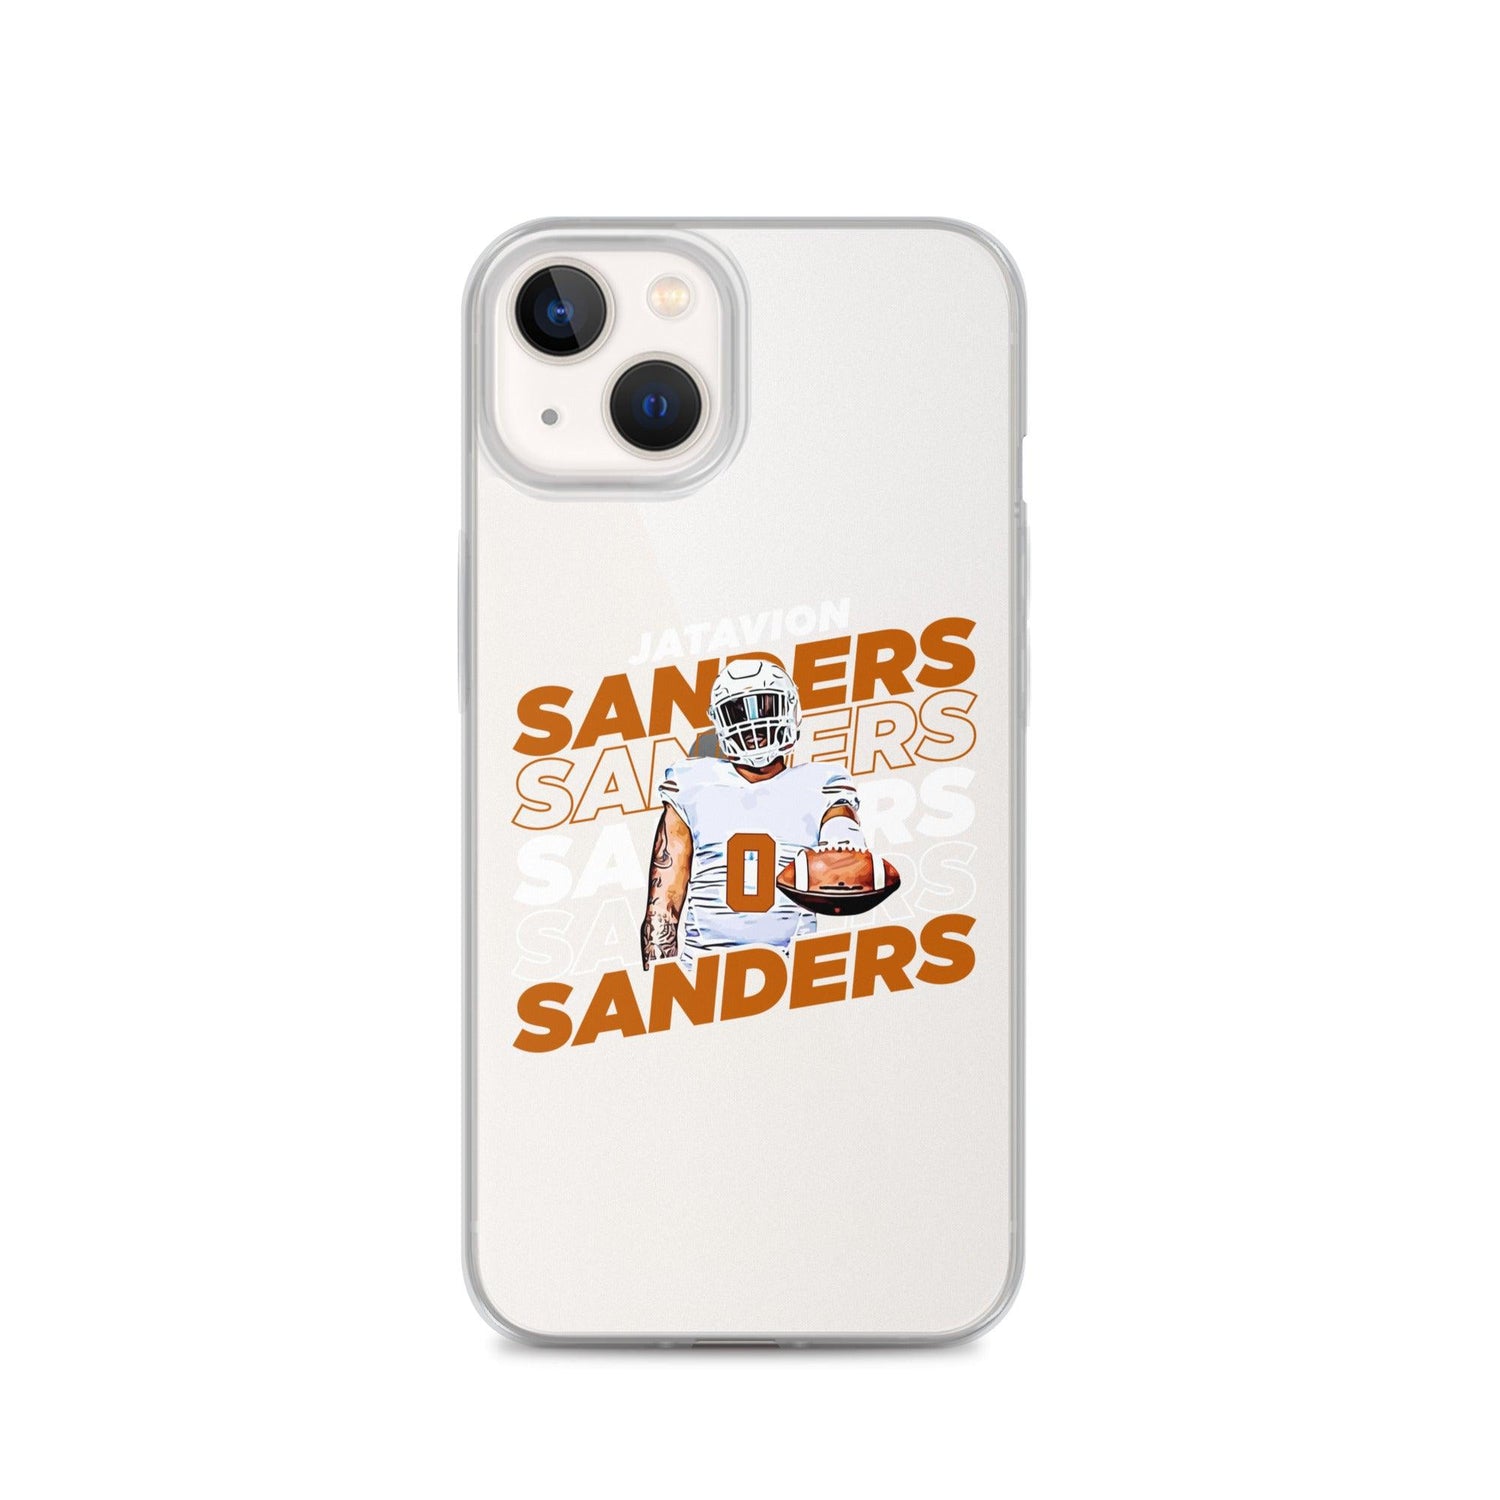 Jatavion Sanders "Repeat" iPhone Case - Fan Arch